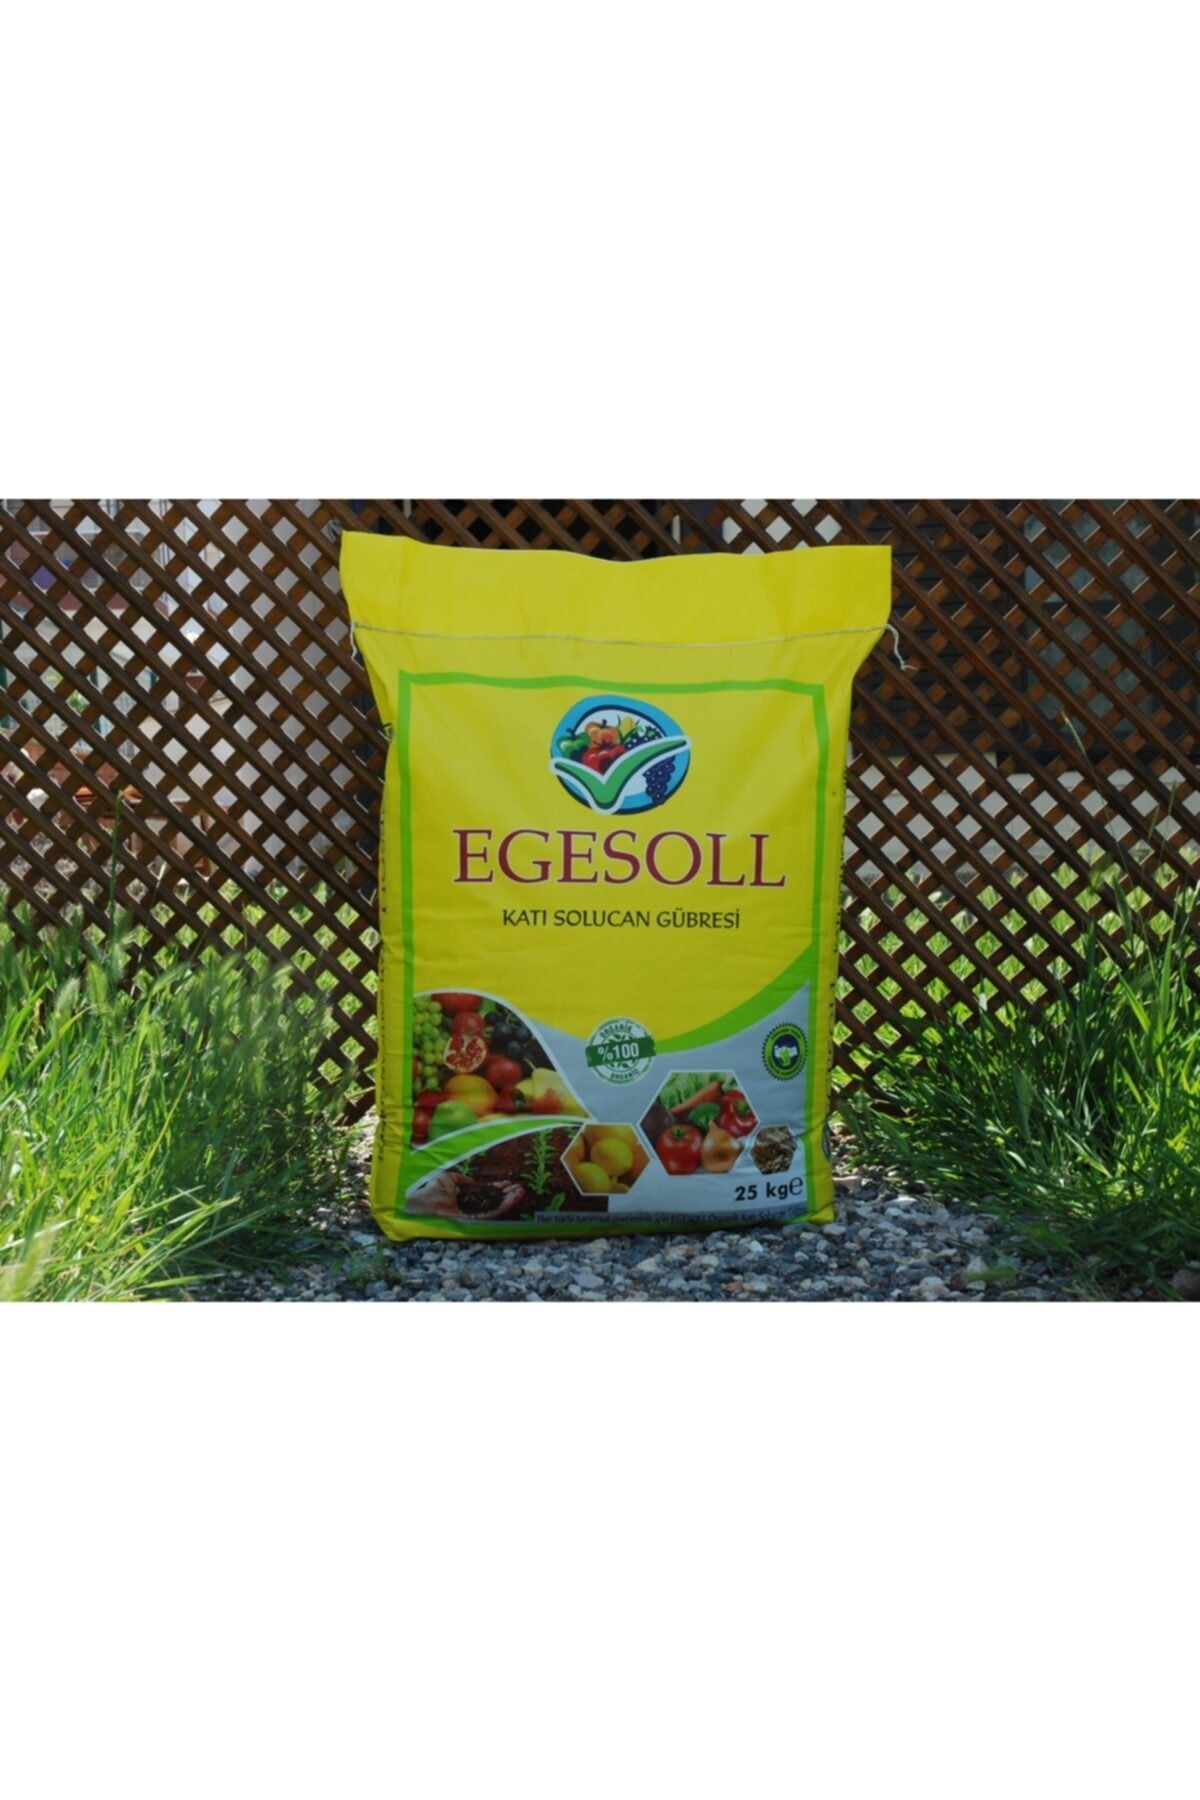 EGESOLL %100 Organik Katı Solucan Gübresi 25 Kg